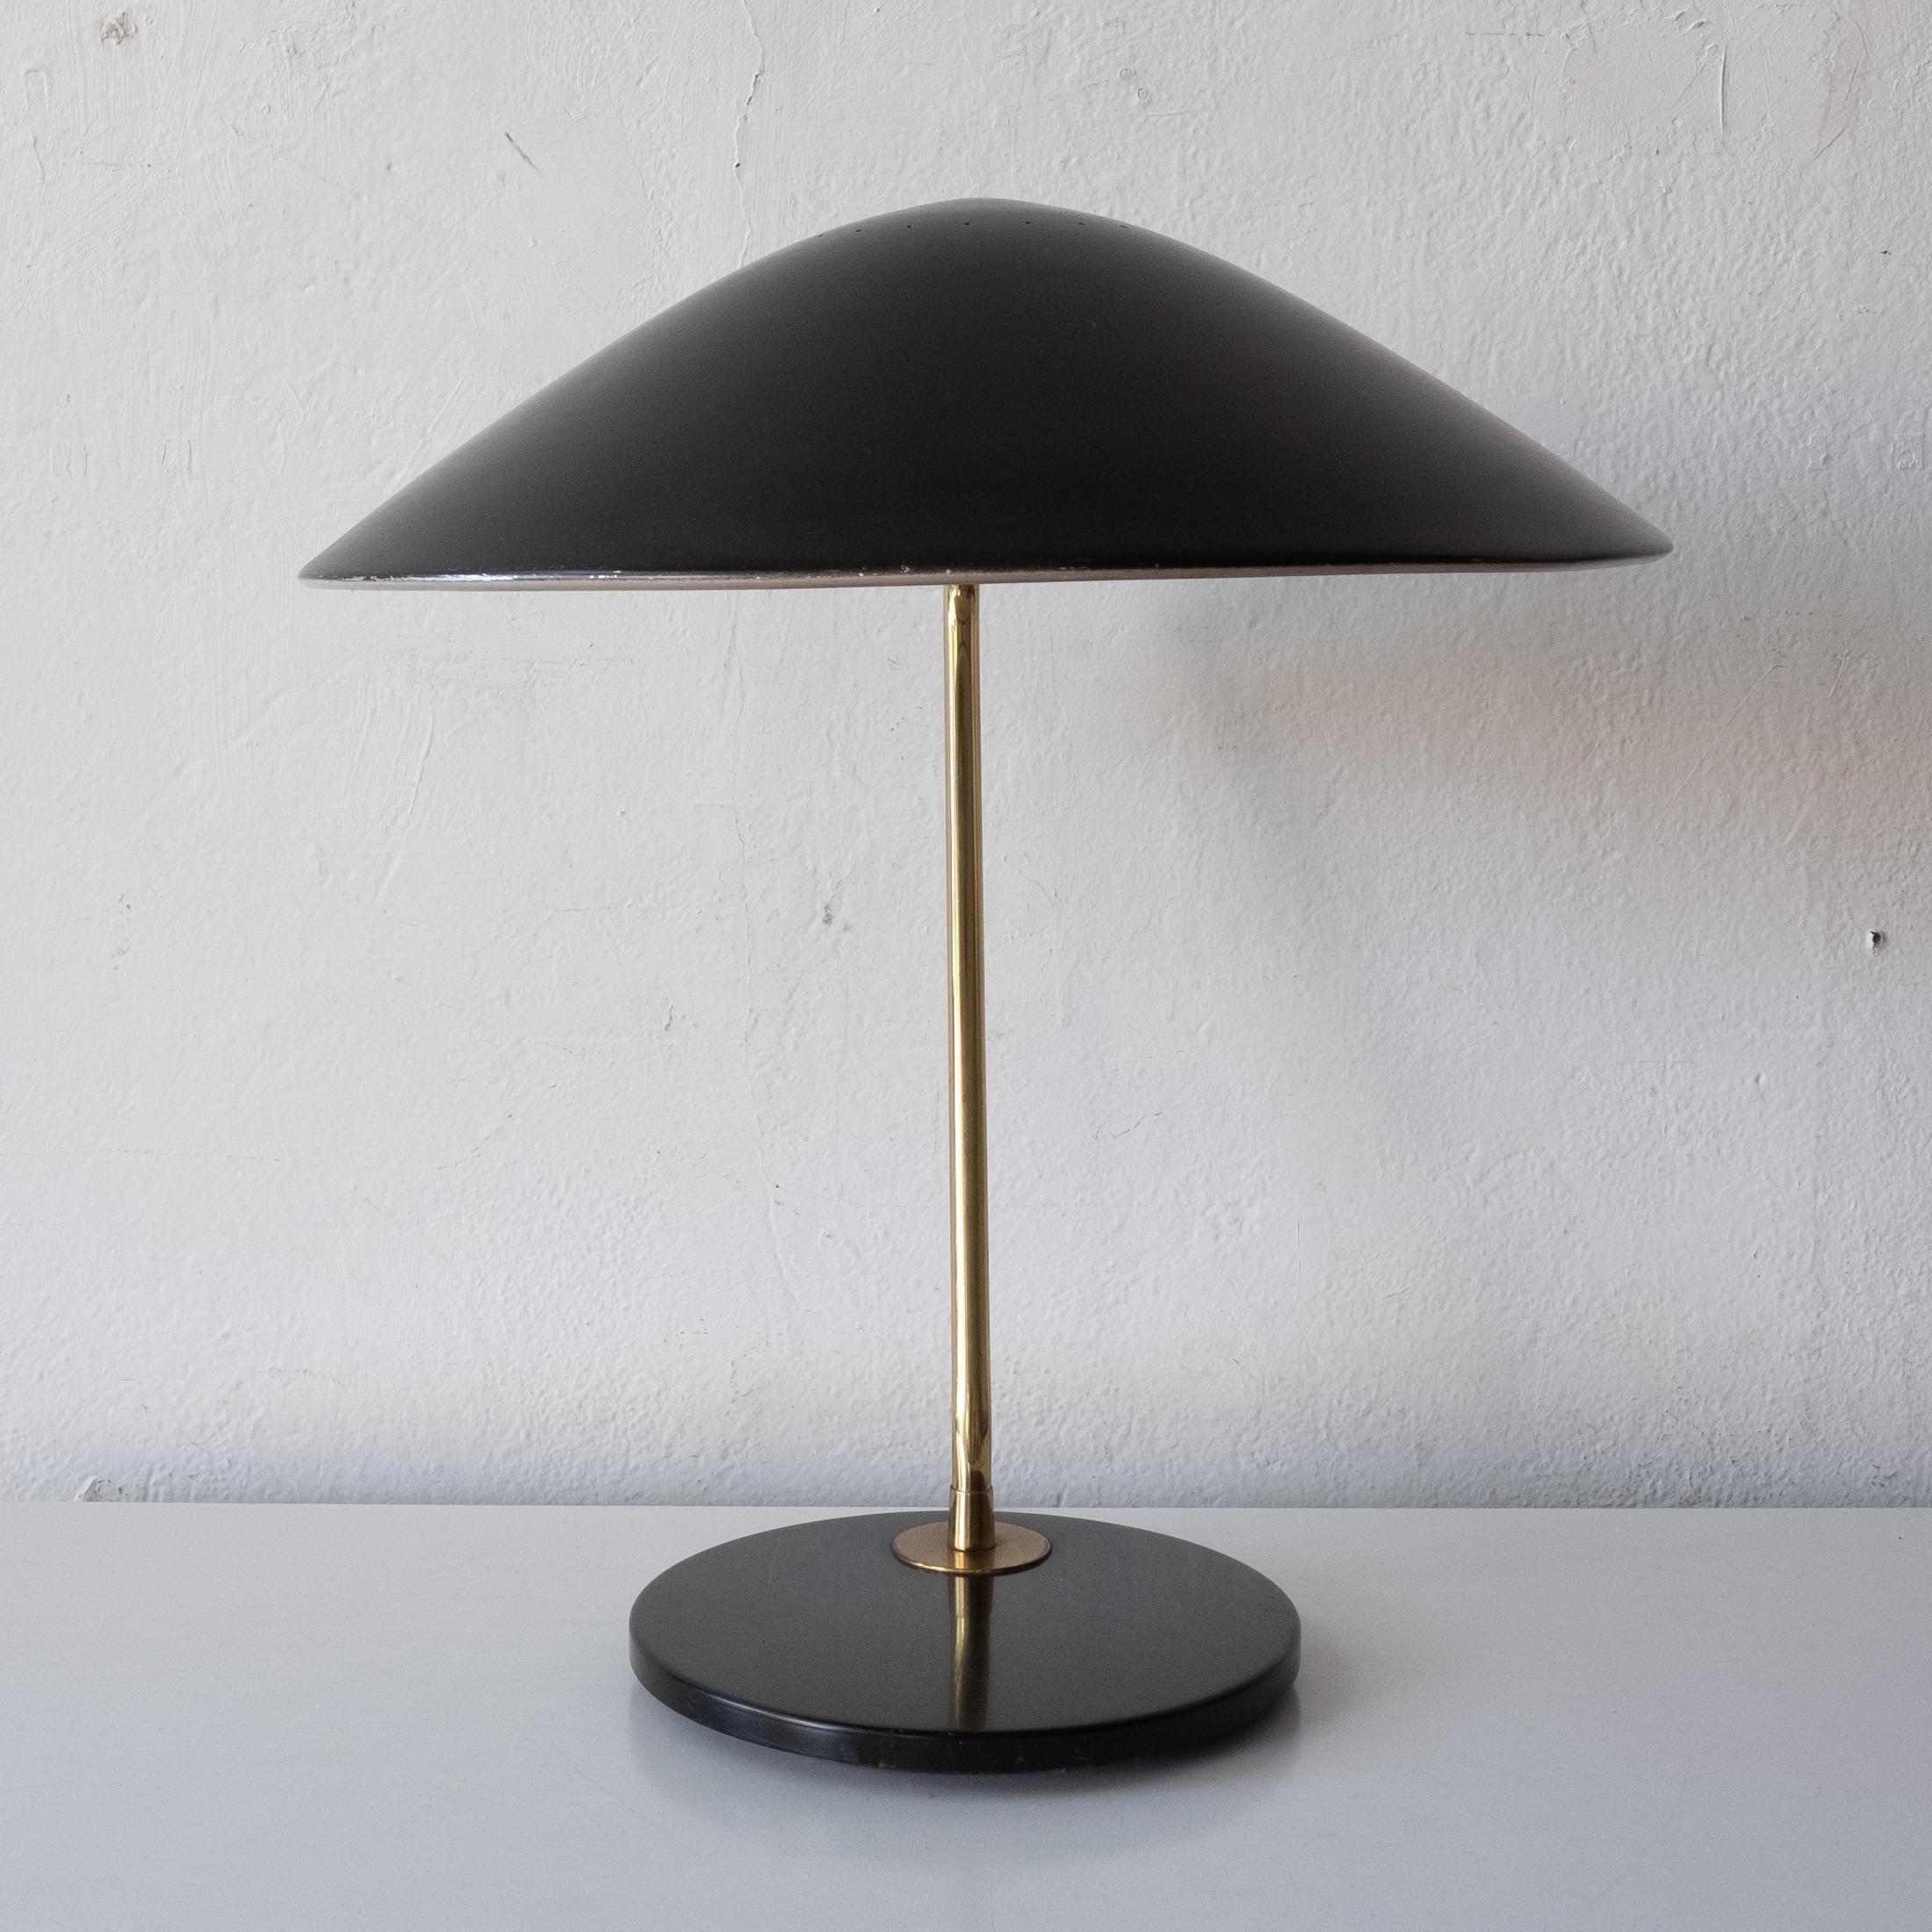 American Gerald Thurston for Lightolier Desk or Table Lamp